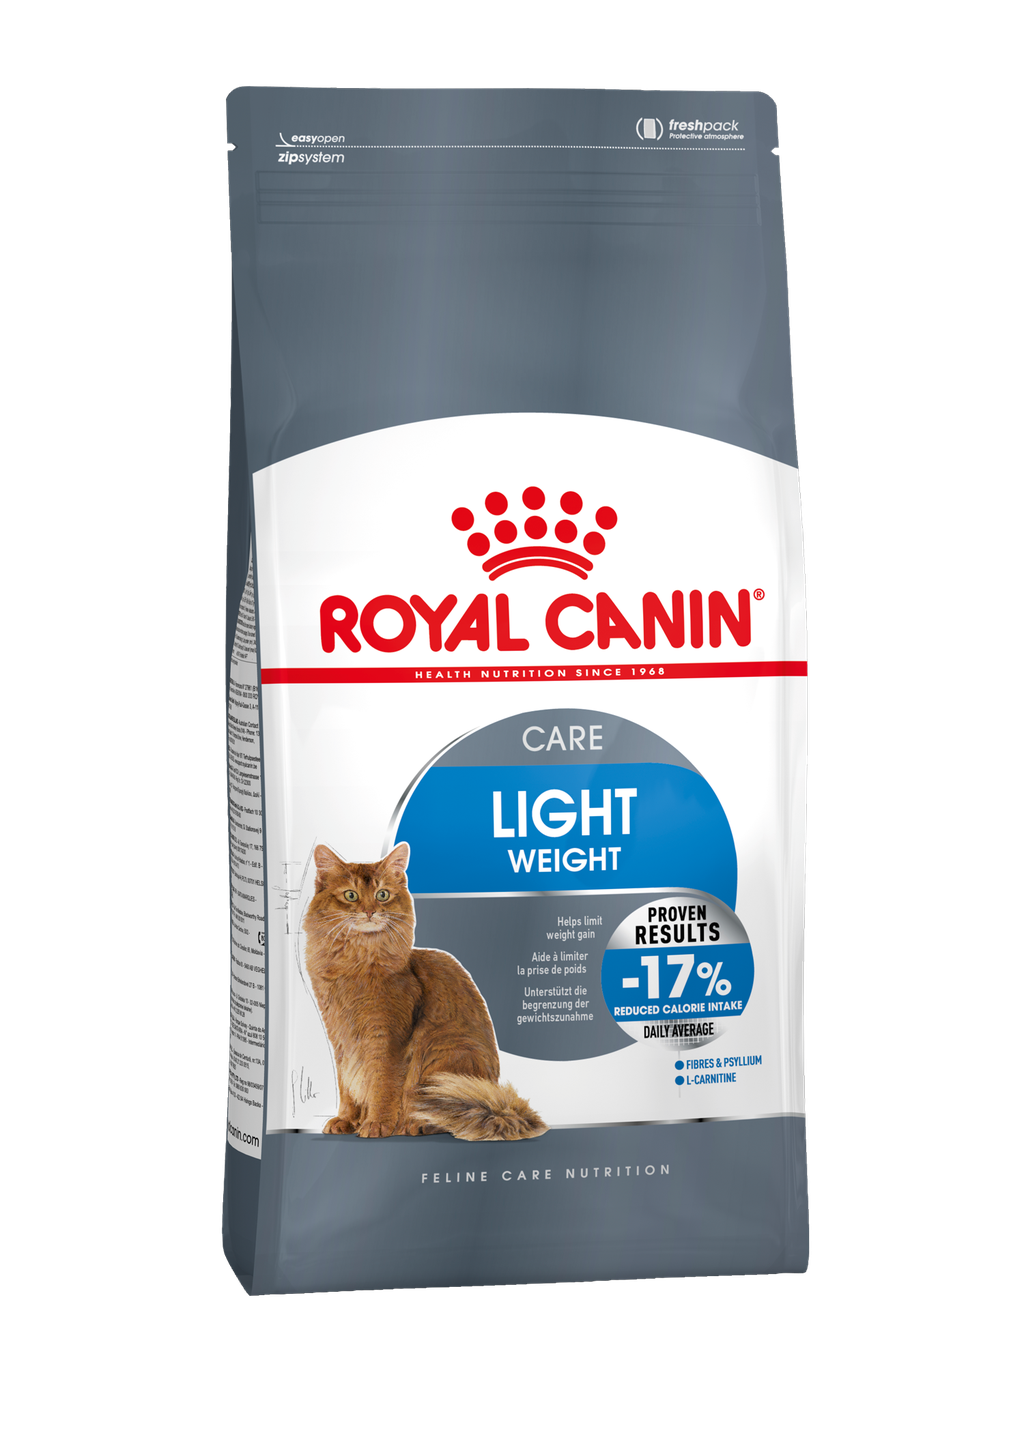 Bijdrager Baby Vergemakkelijken Light Weight Care: aangepaste voeding voor uw kat - Voeding - ROYAL CANIN©